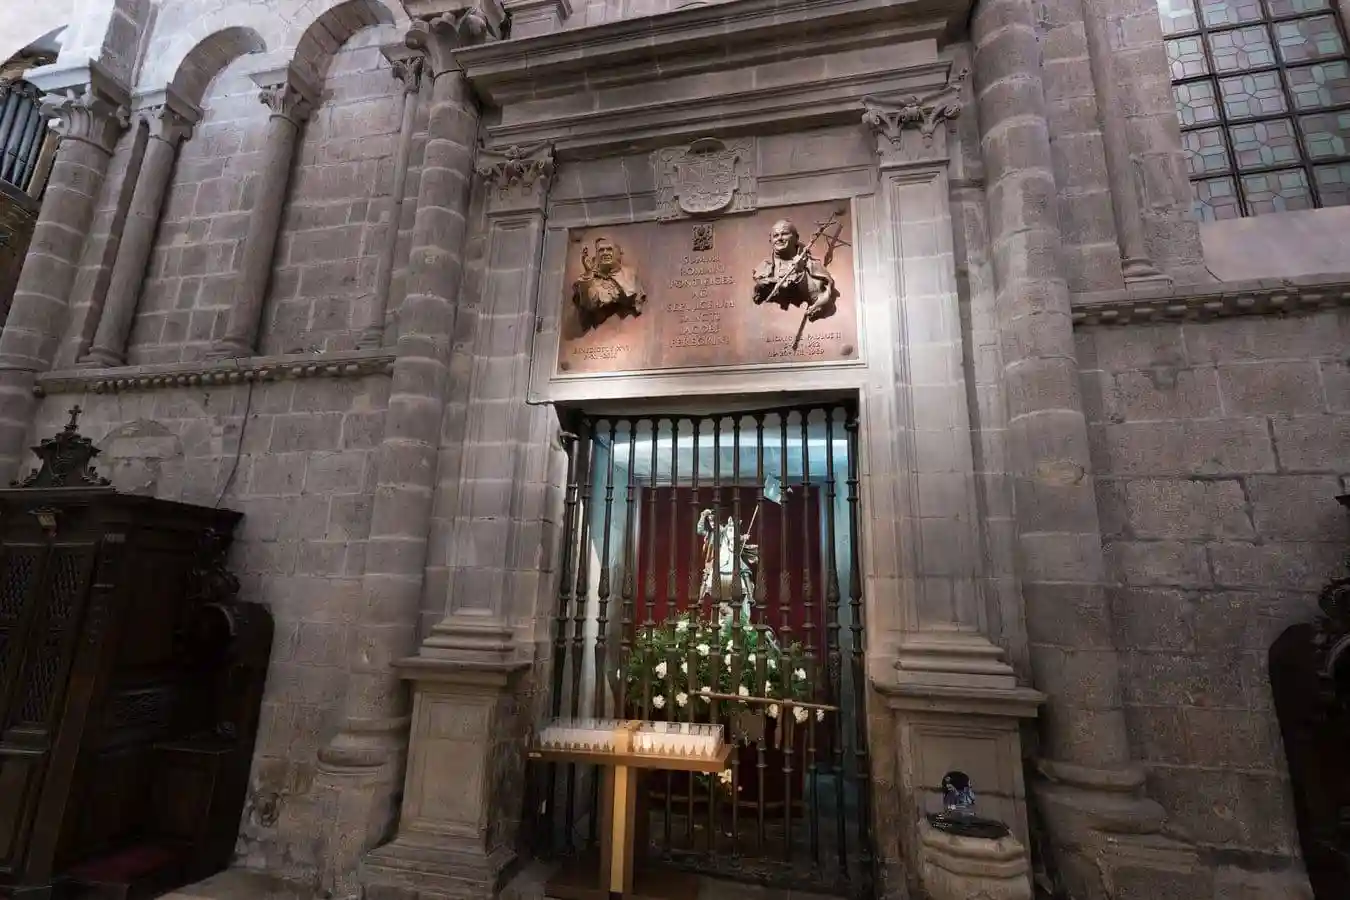 El camarín de Santiago Matamoros se abre en el brazo norte del trasepto